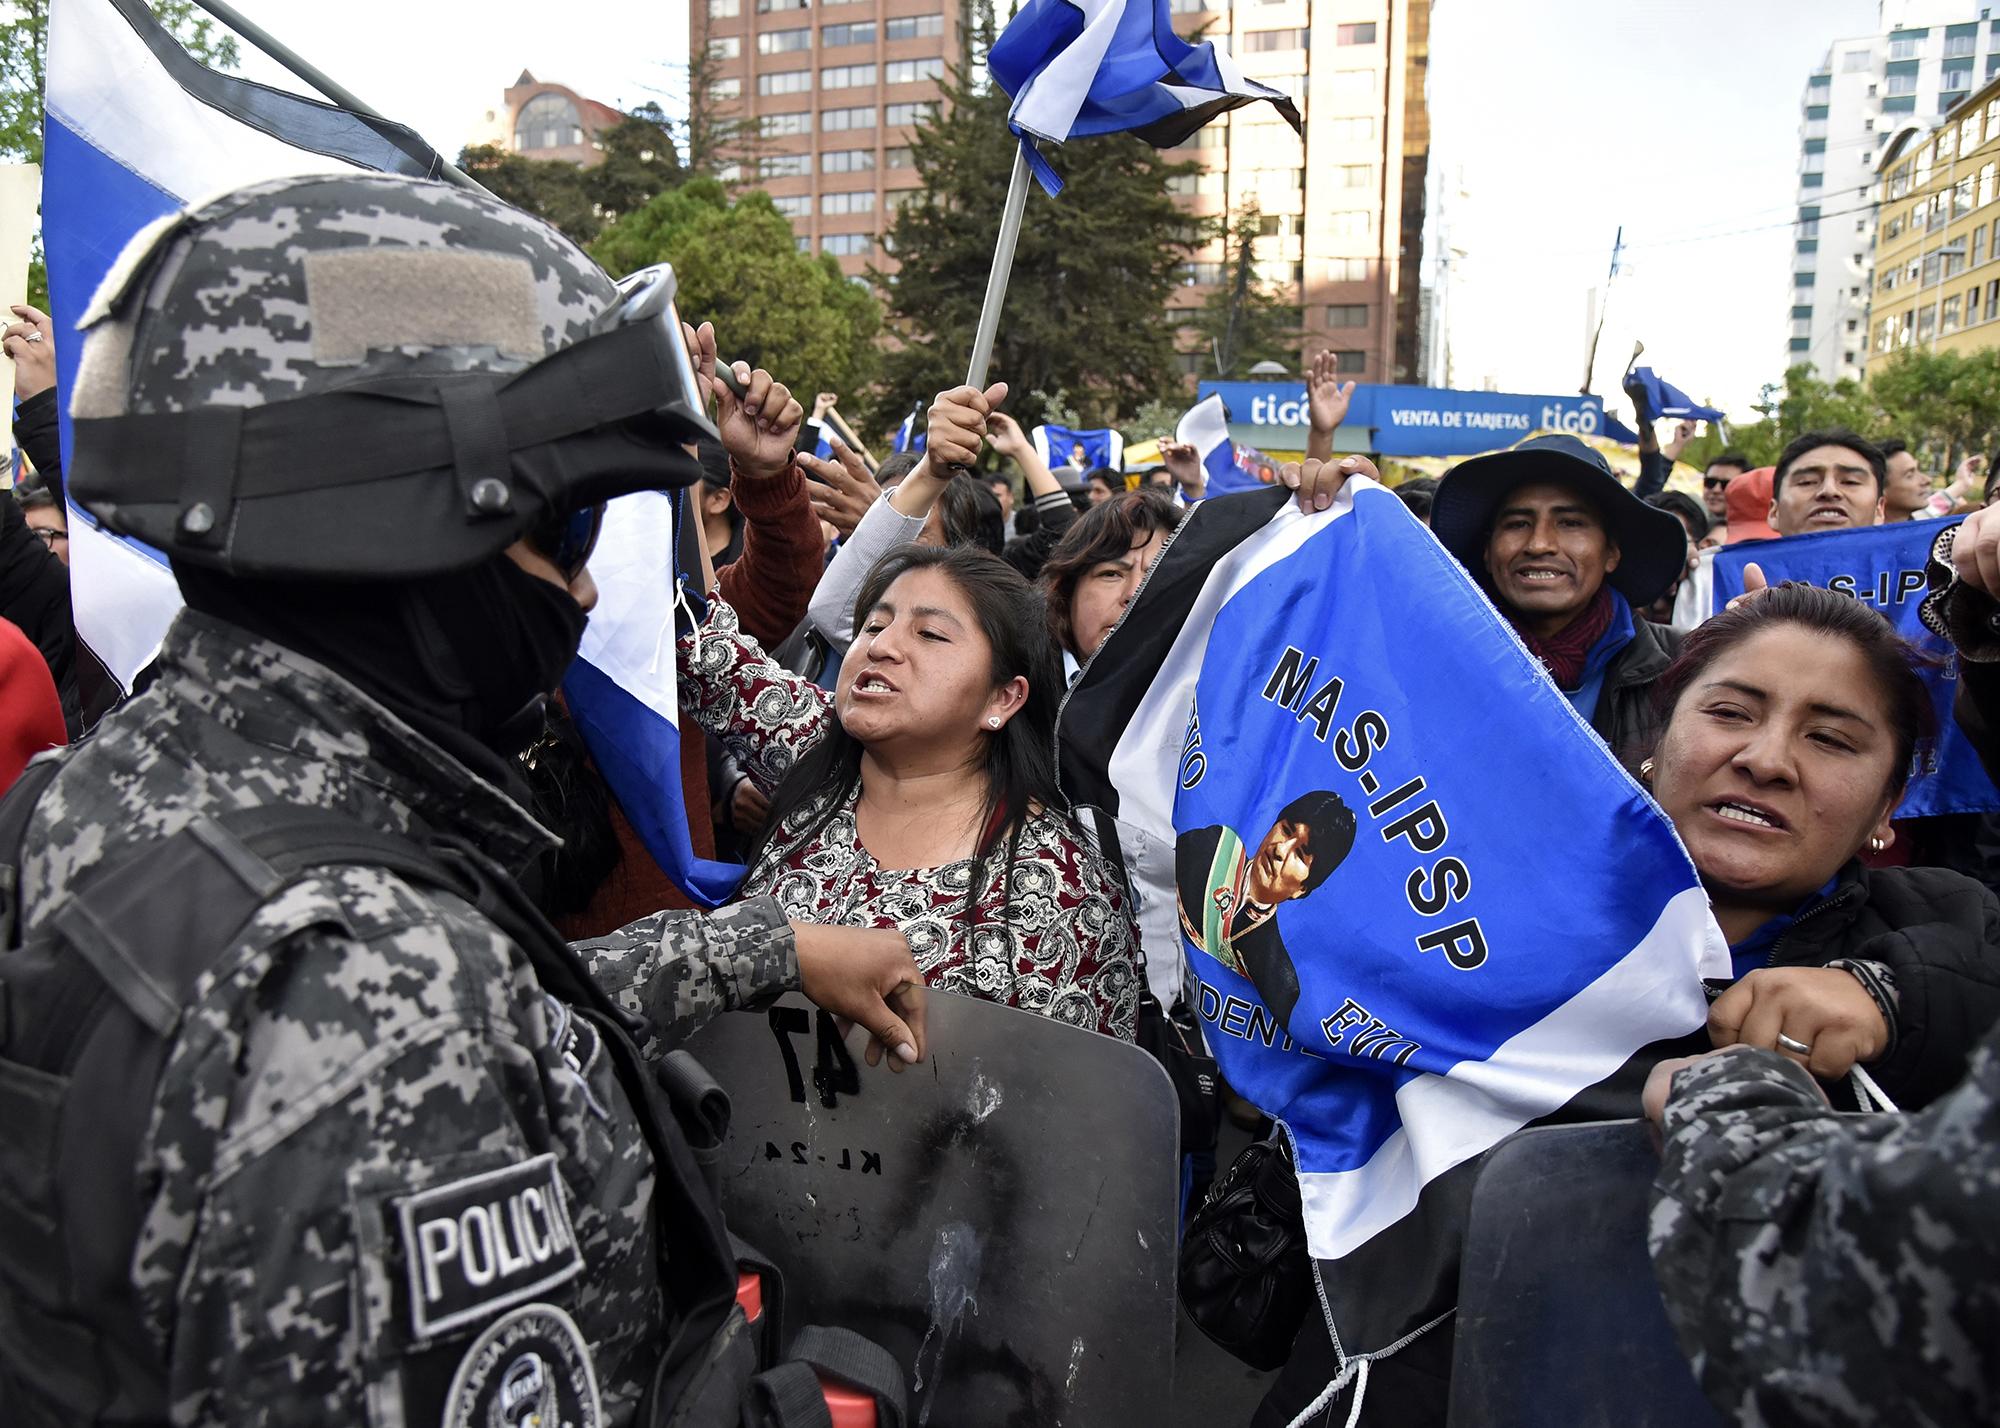 Los partidarios del presidente y candidato de Bolivia, Evo Morales, están siendo contenidos por las fuerzas de seguridad mientras gritan consignas contra los partidarios del candidato del partido 